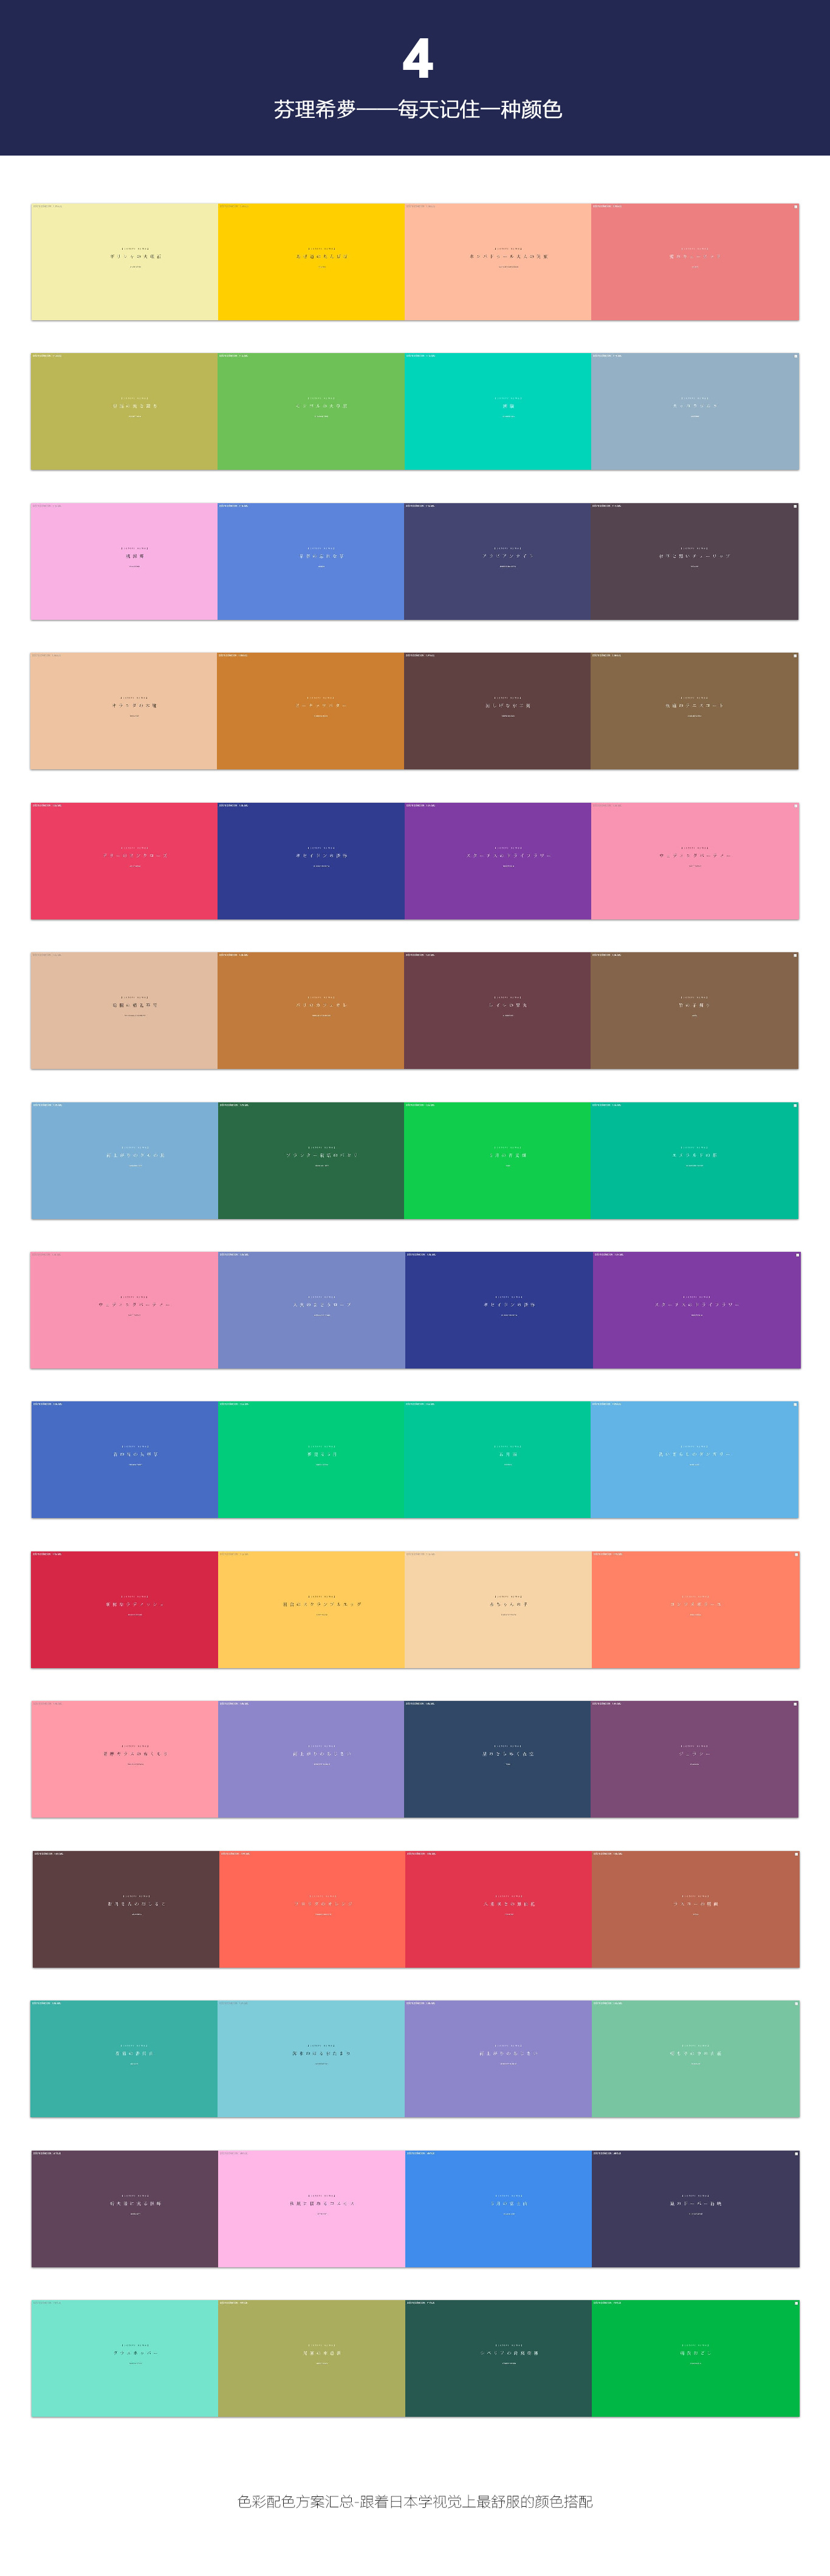 色彩配色方案汇总—跟着日本学视觉上最舒服的颜色搭配